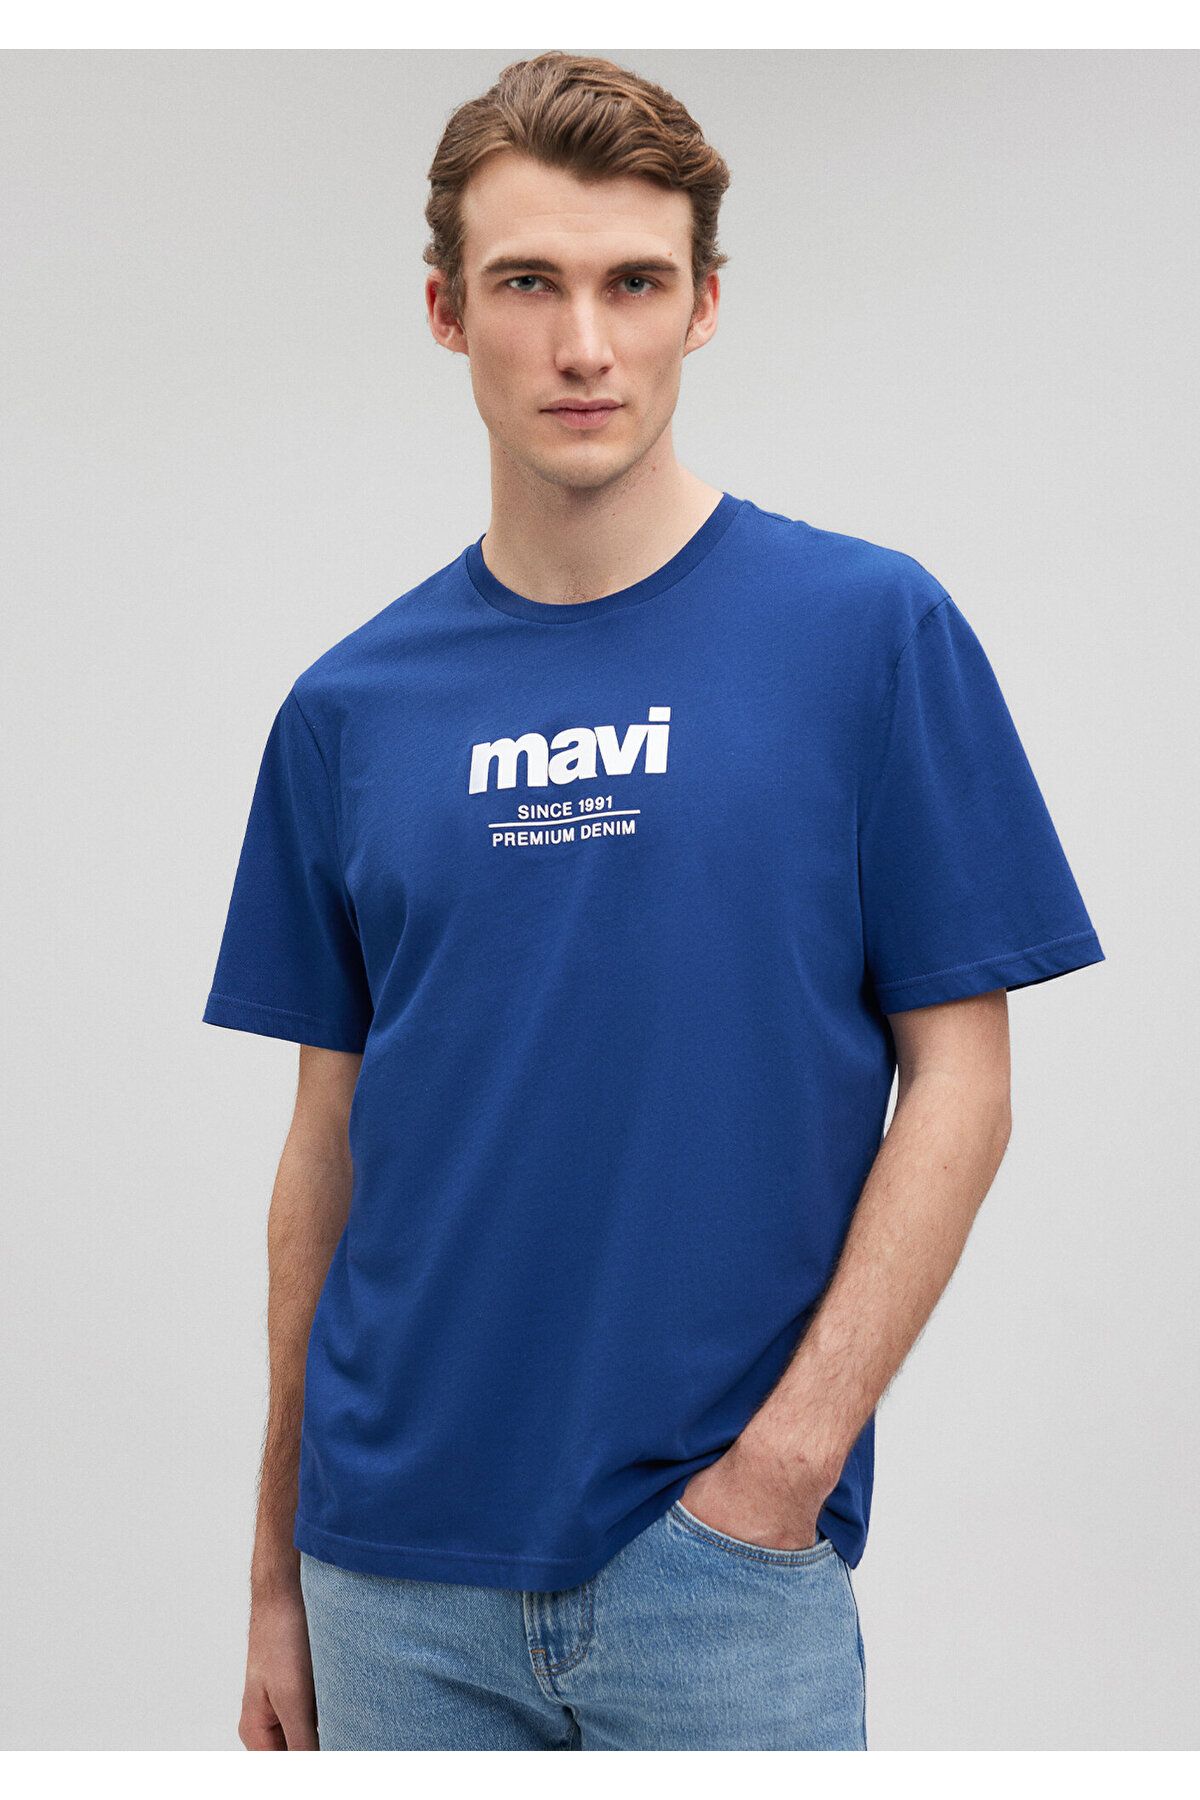 Mavi Logo Baskılı Lacivert Tişört Regular Fit / Normal Kesim 066849-70758